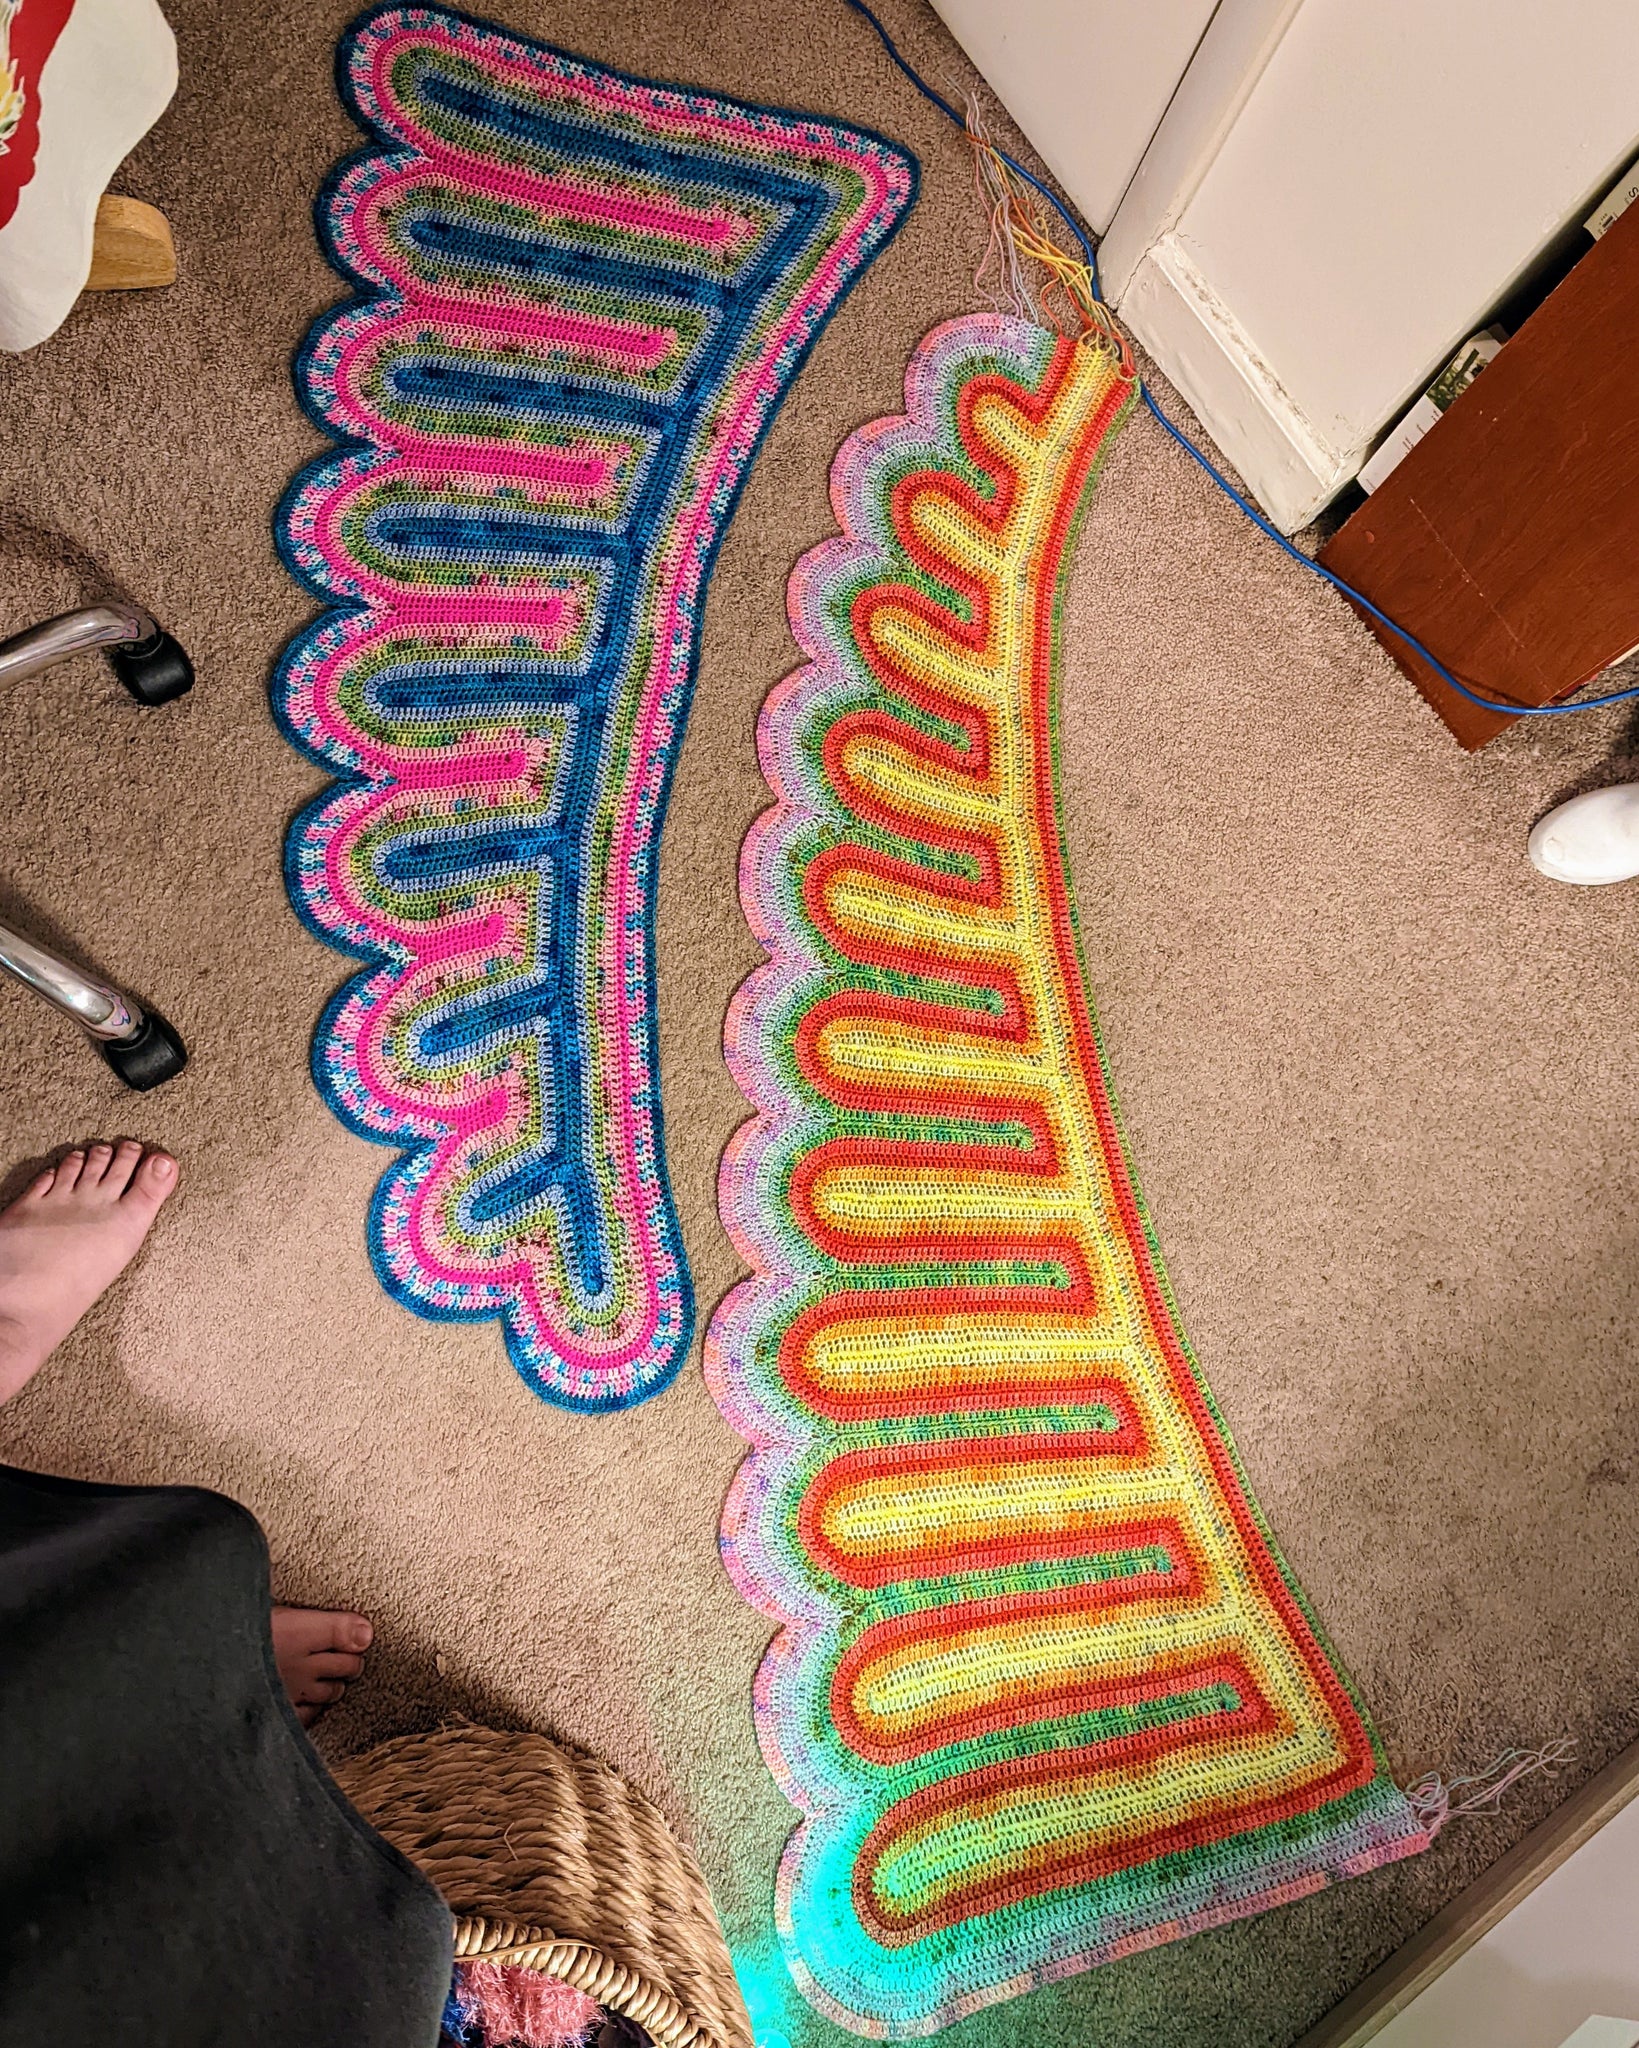 'Spherio' Dragon Tail Shawl Downloadable Crochet Pattern